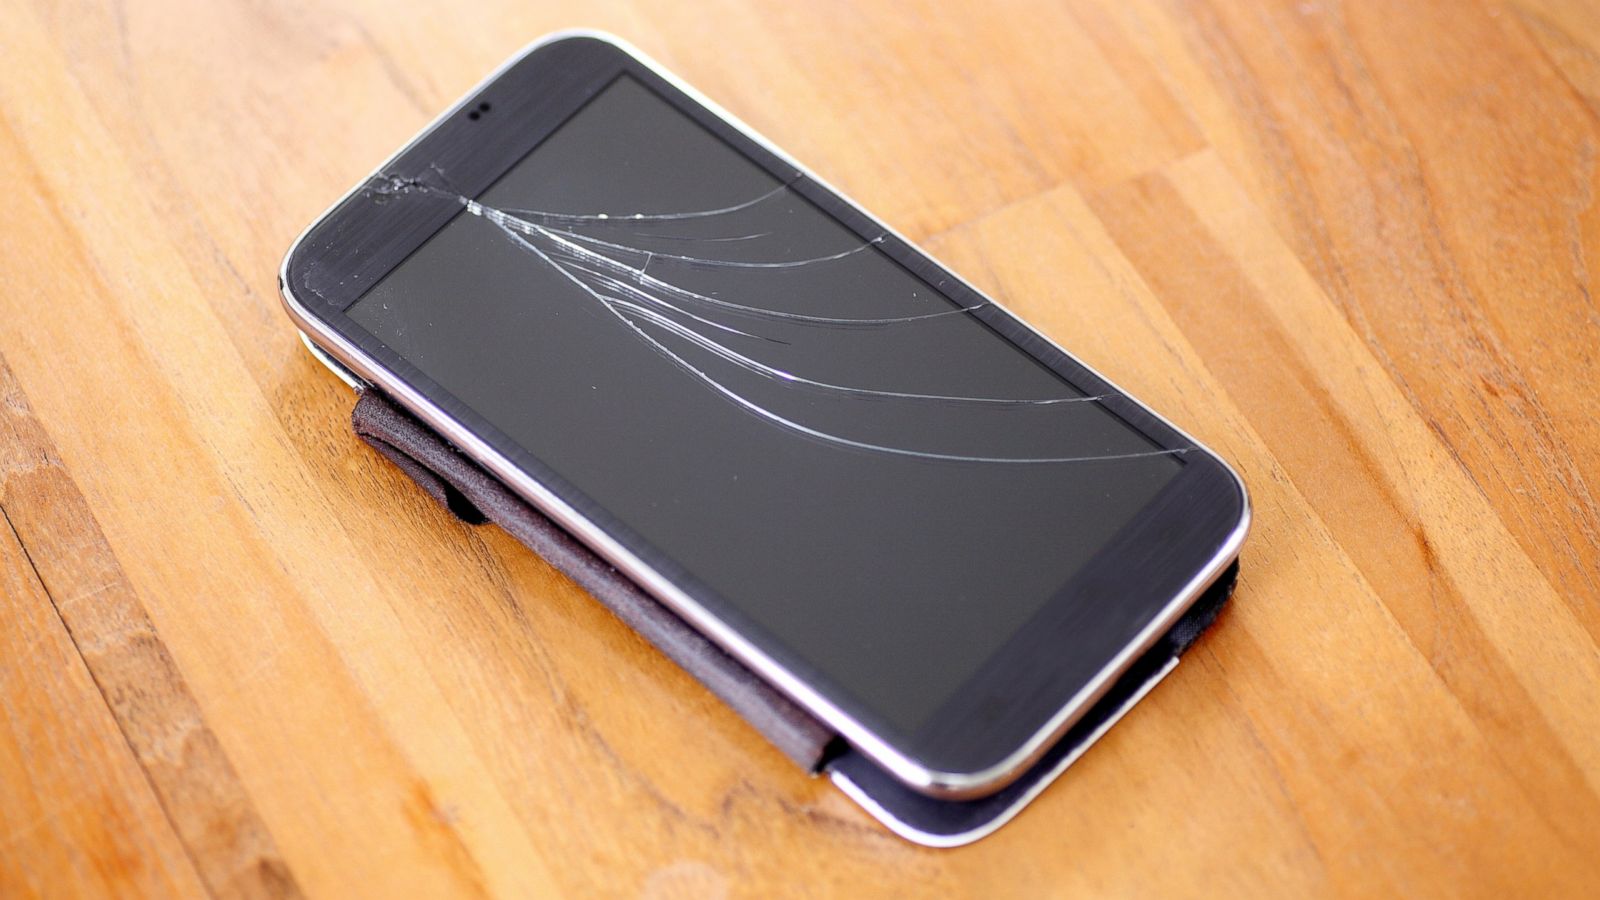 Diga adeus aos inconvenientes da tela quebrada do iPhone. Restaure seu dispositivo para a perfeição com nossa assistência especializada.